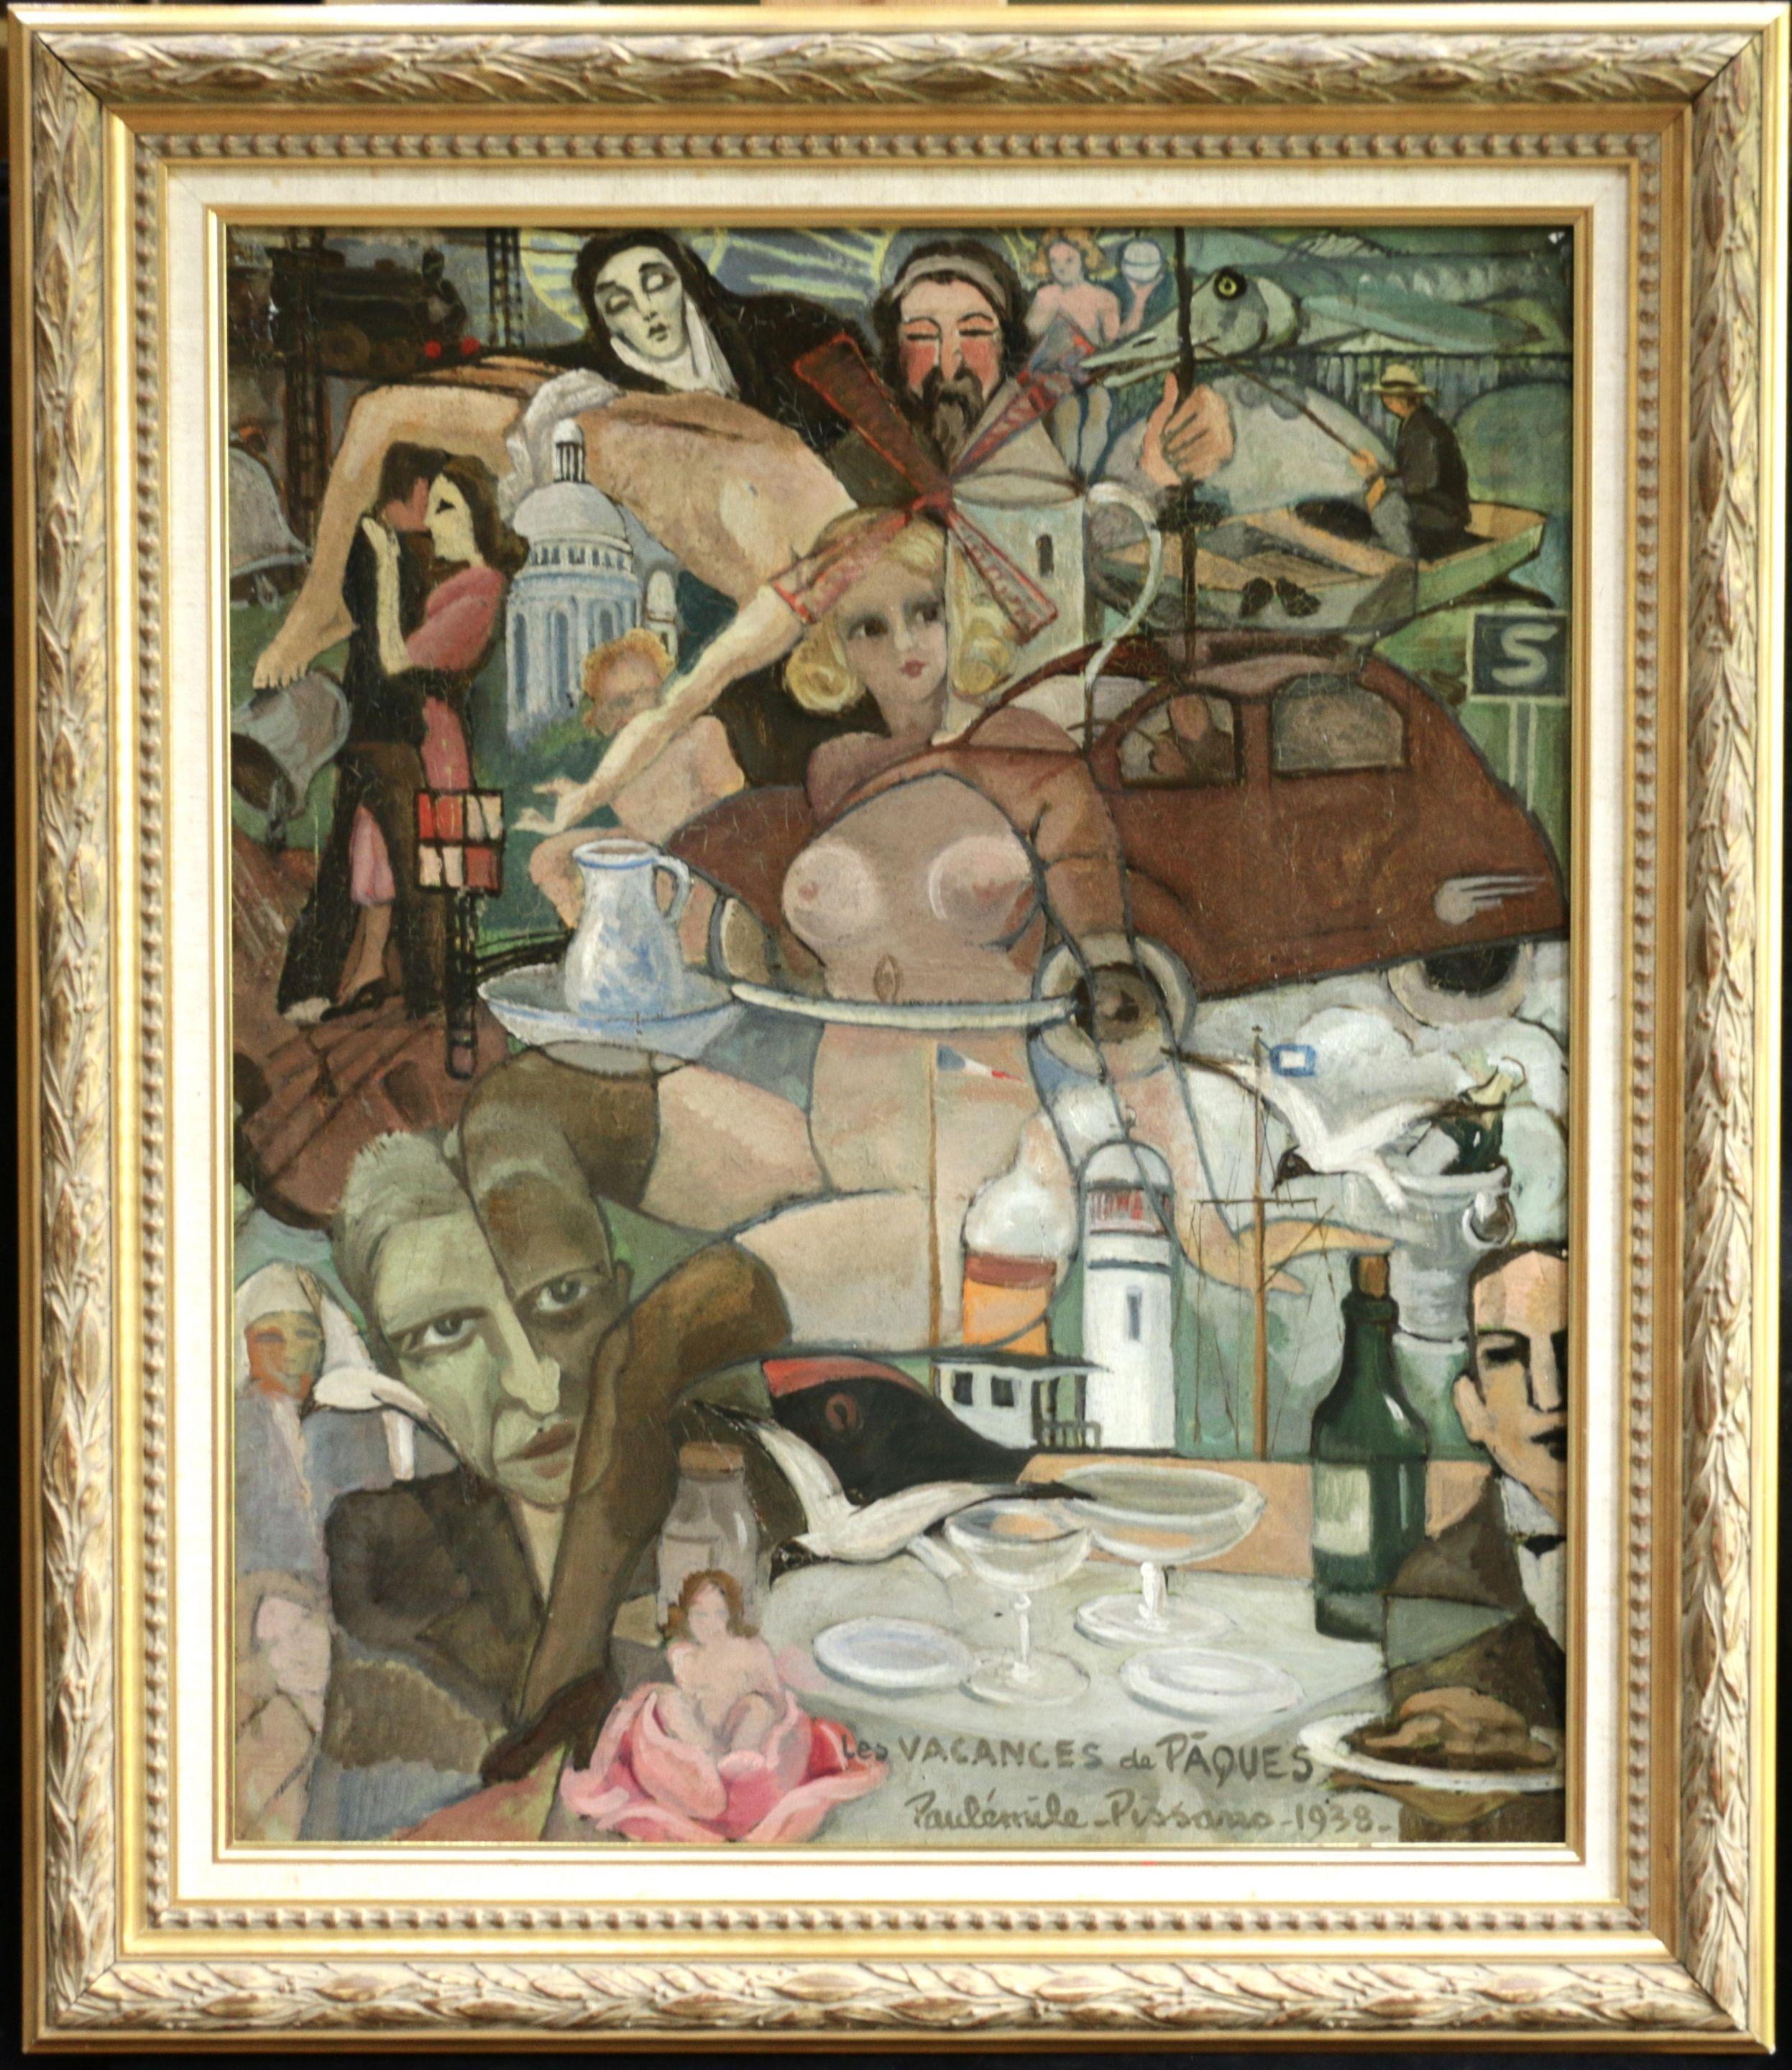 Les Vacances de Pâques - 19th Century Cubist Oil, Easter Holidays by P Pissarro - Painting by Paul Emile Pissarro